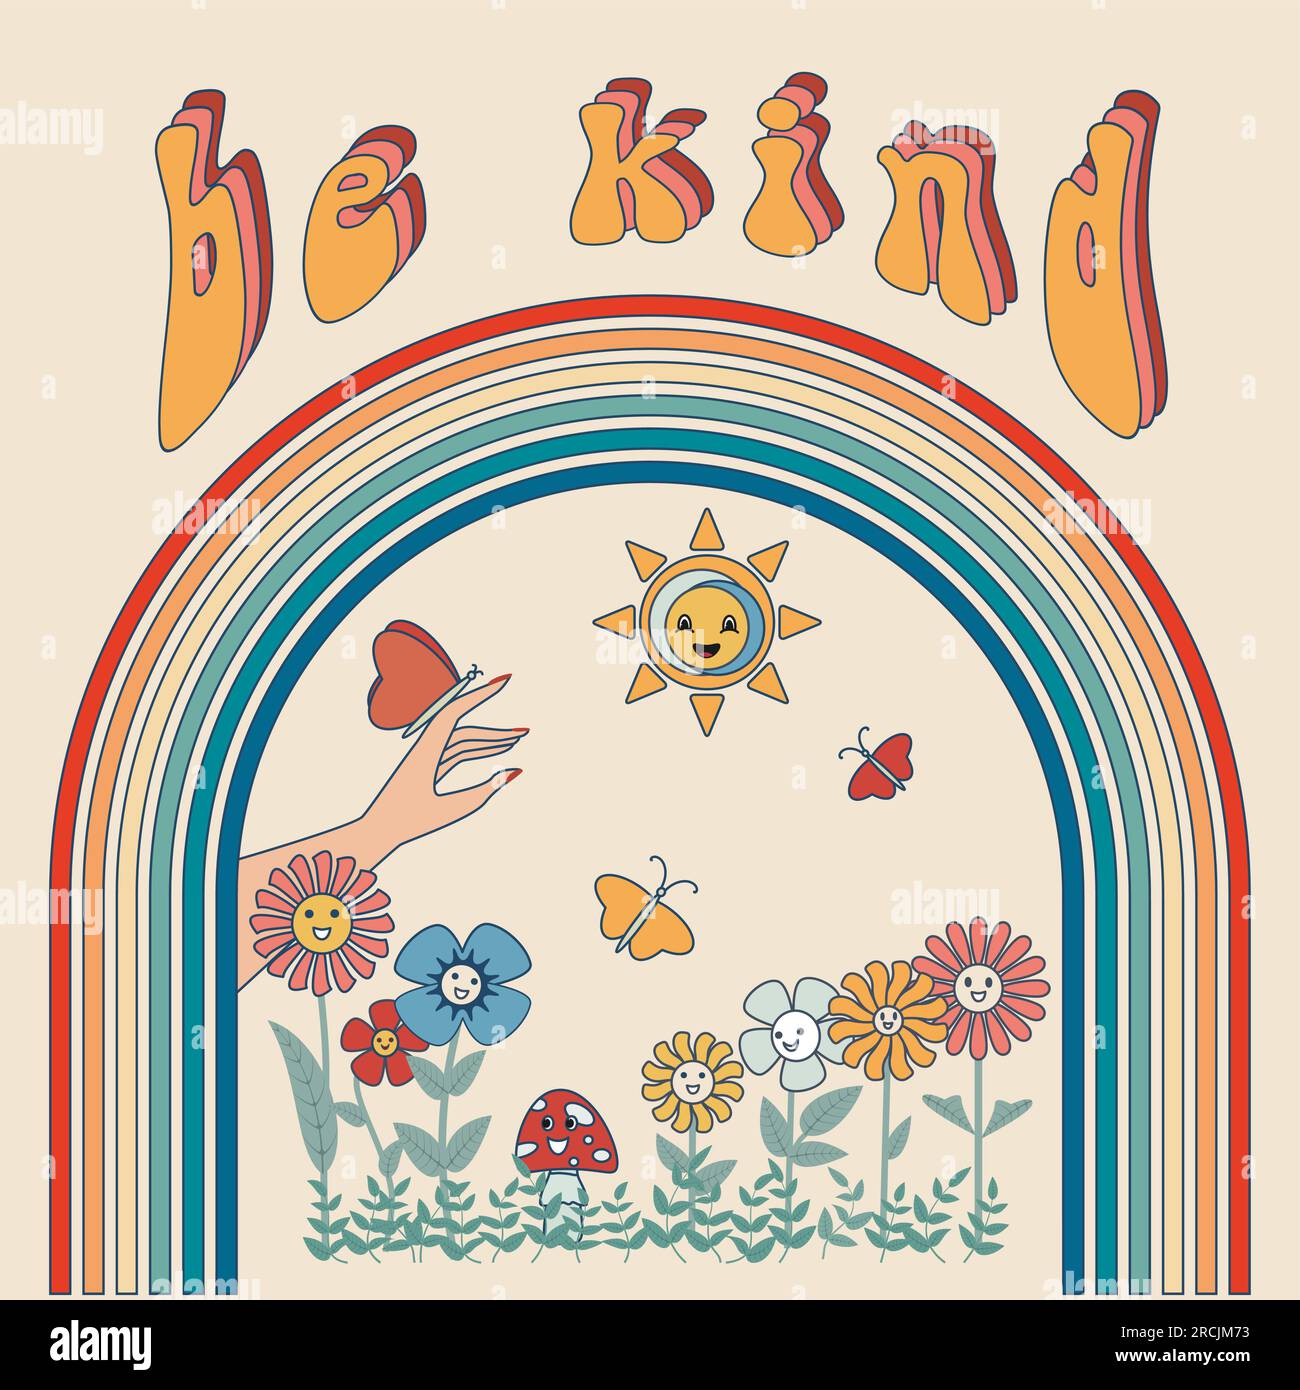 Inschrift Be Kind Groovy Poster Regenbogen, lächelnde Blumen, Sonne Schmetterling auf der Hand Vektordarstellung. Isoliert Stock Vektor